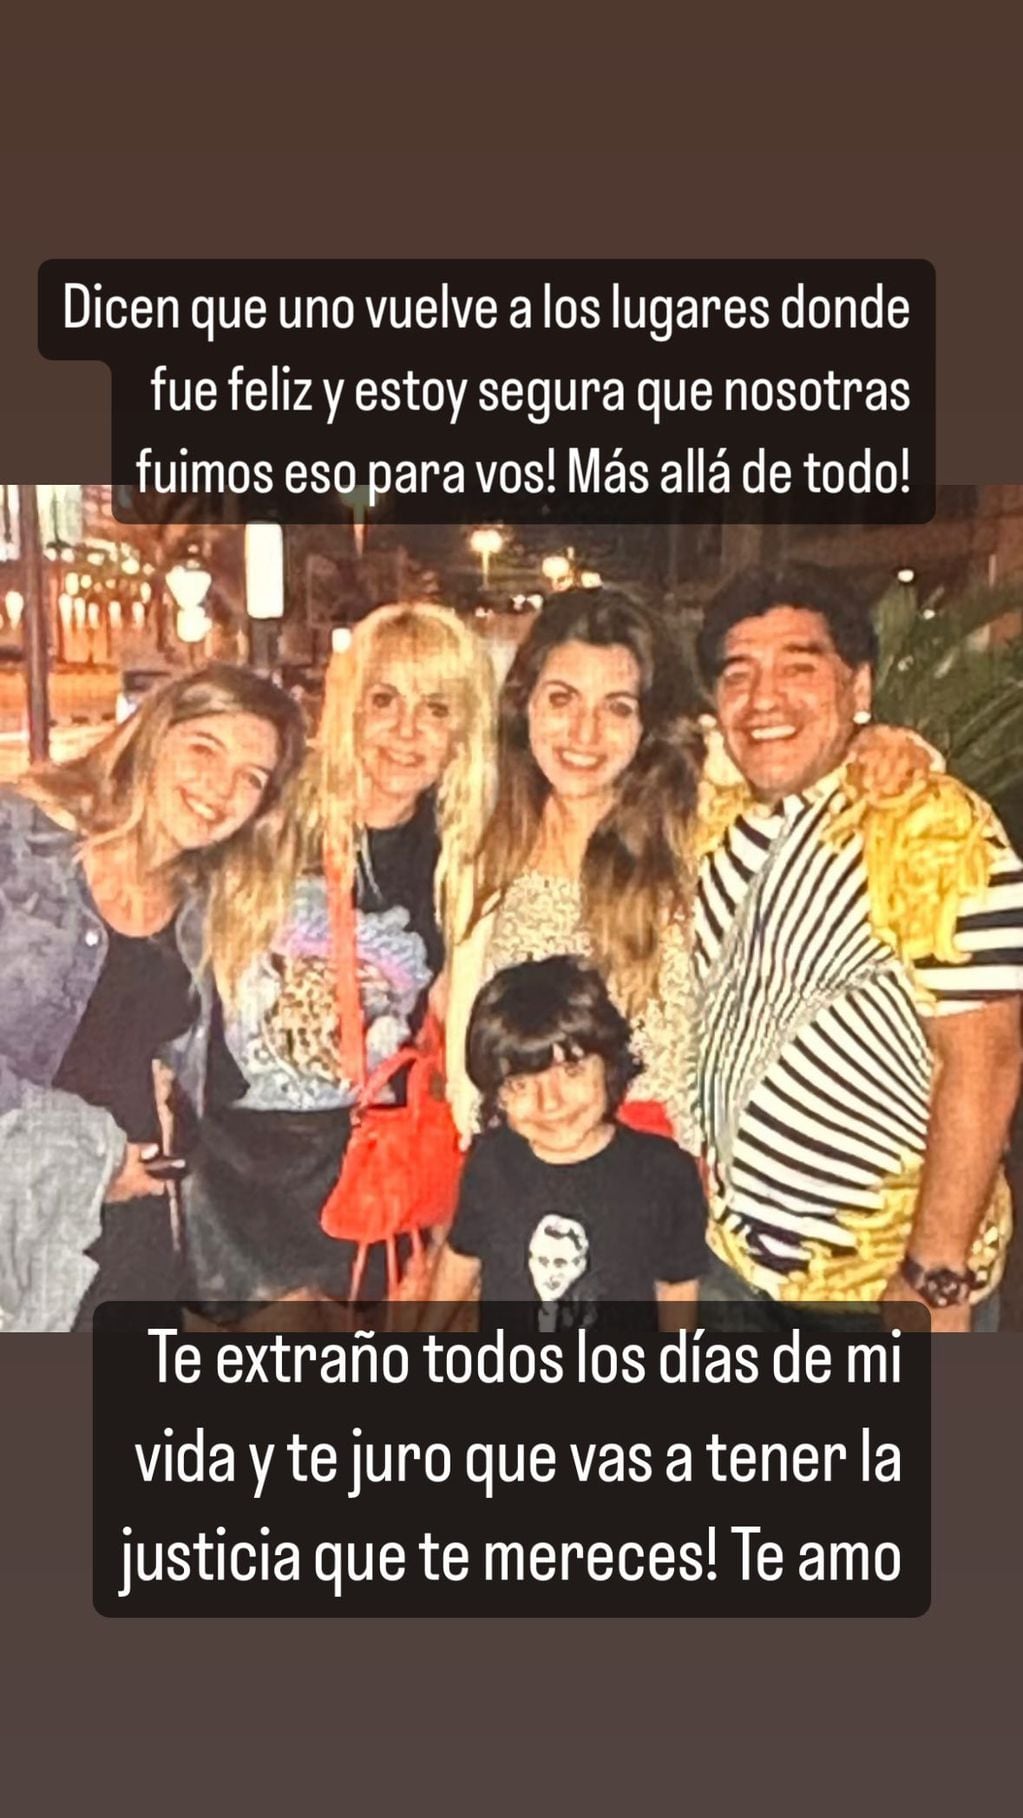 El mensaje de Dalma Maradona